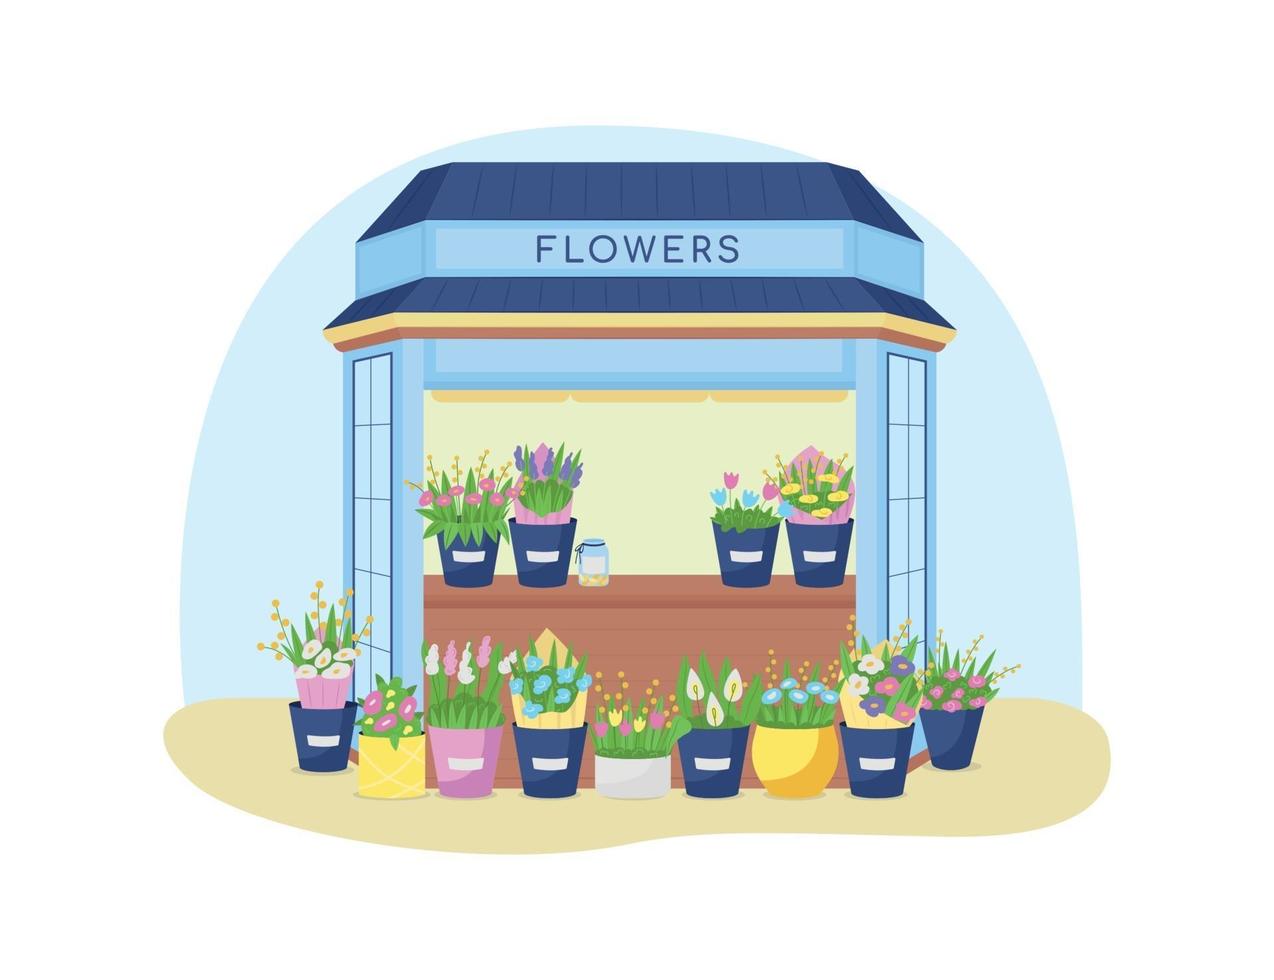 Flowers kiosk 2D vector web banner, poster